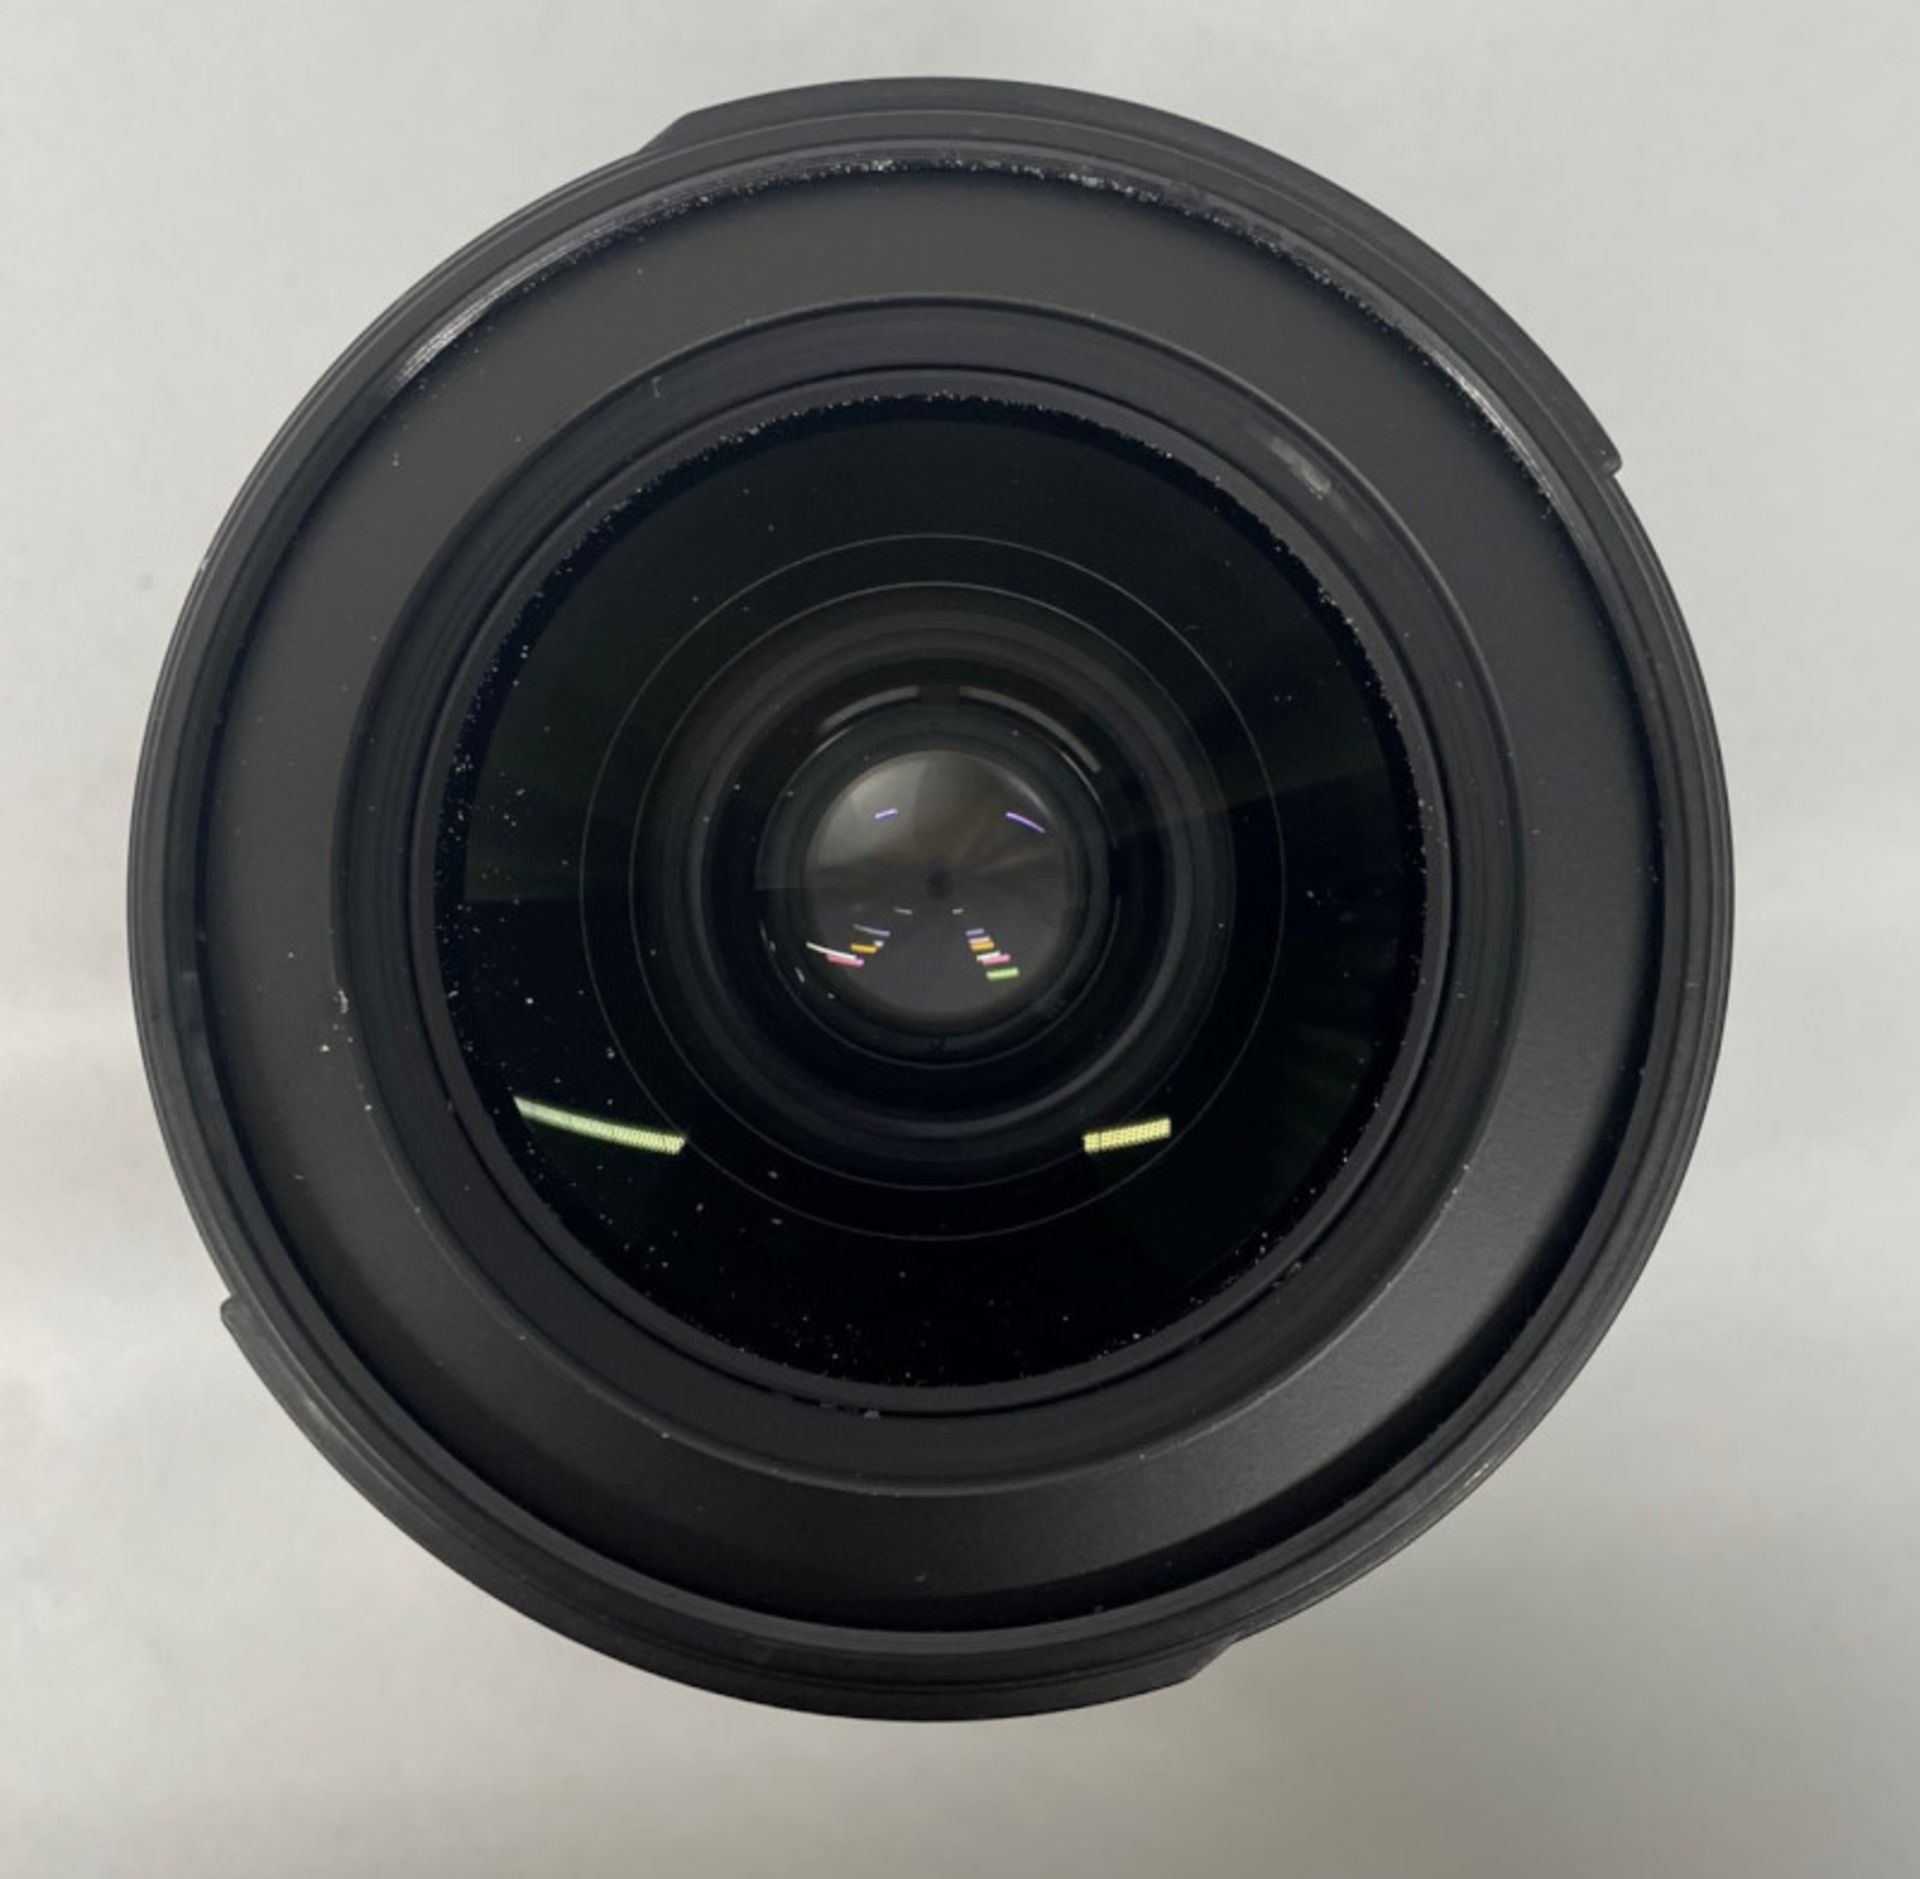 Nikon DX AF-S Nikkor 17-55mm - 1:2.8G ED Lens - Serial No. 331423 & Nikon HB-31 Lens Hood - Image 4 of 6